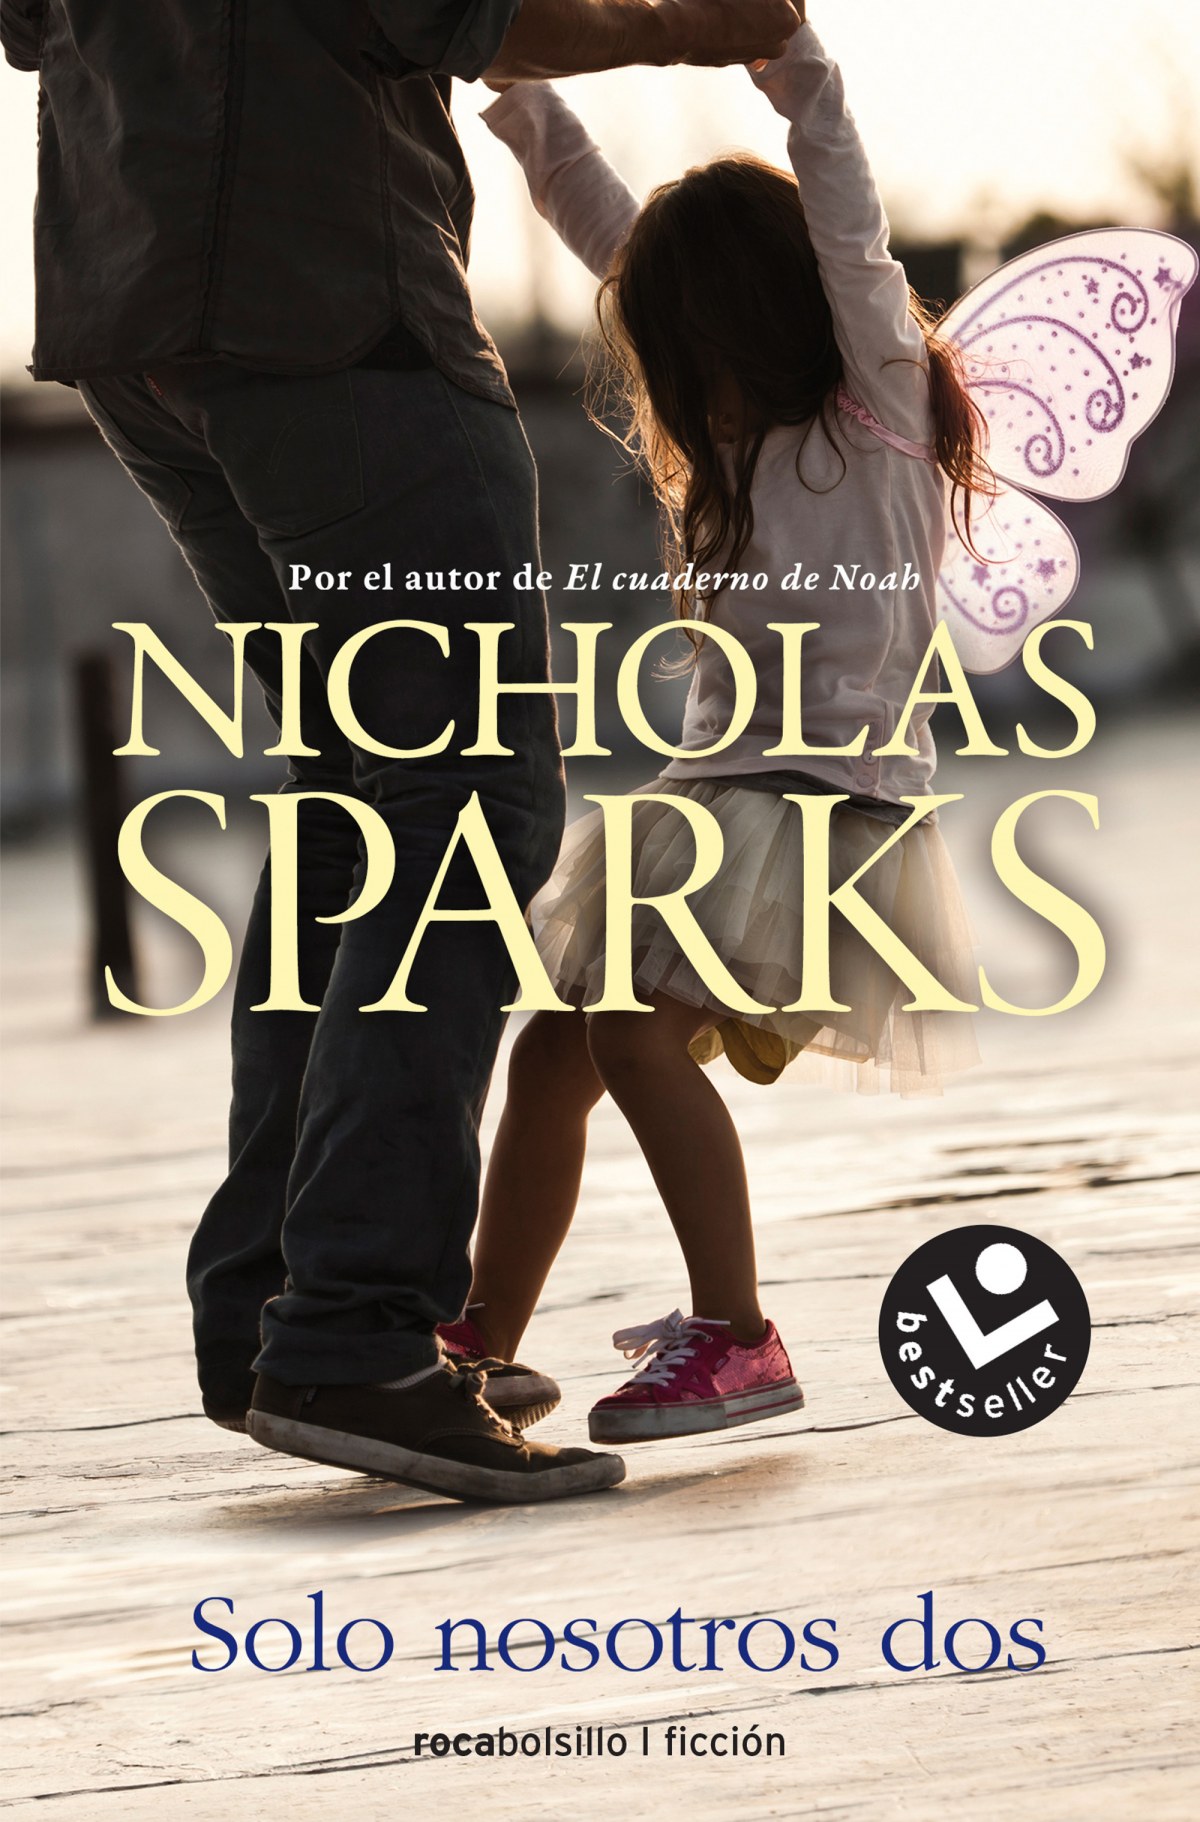 Solo nosotros dos - Sparks, Nicholas